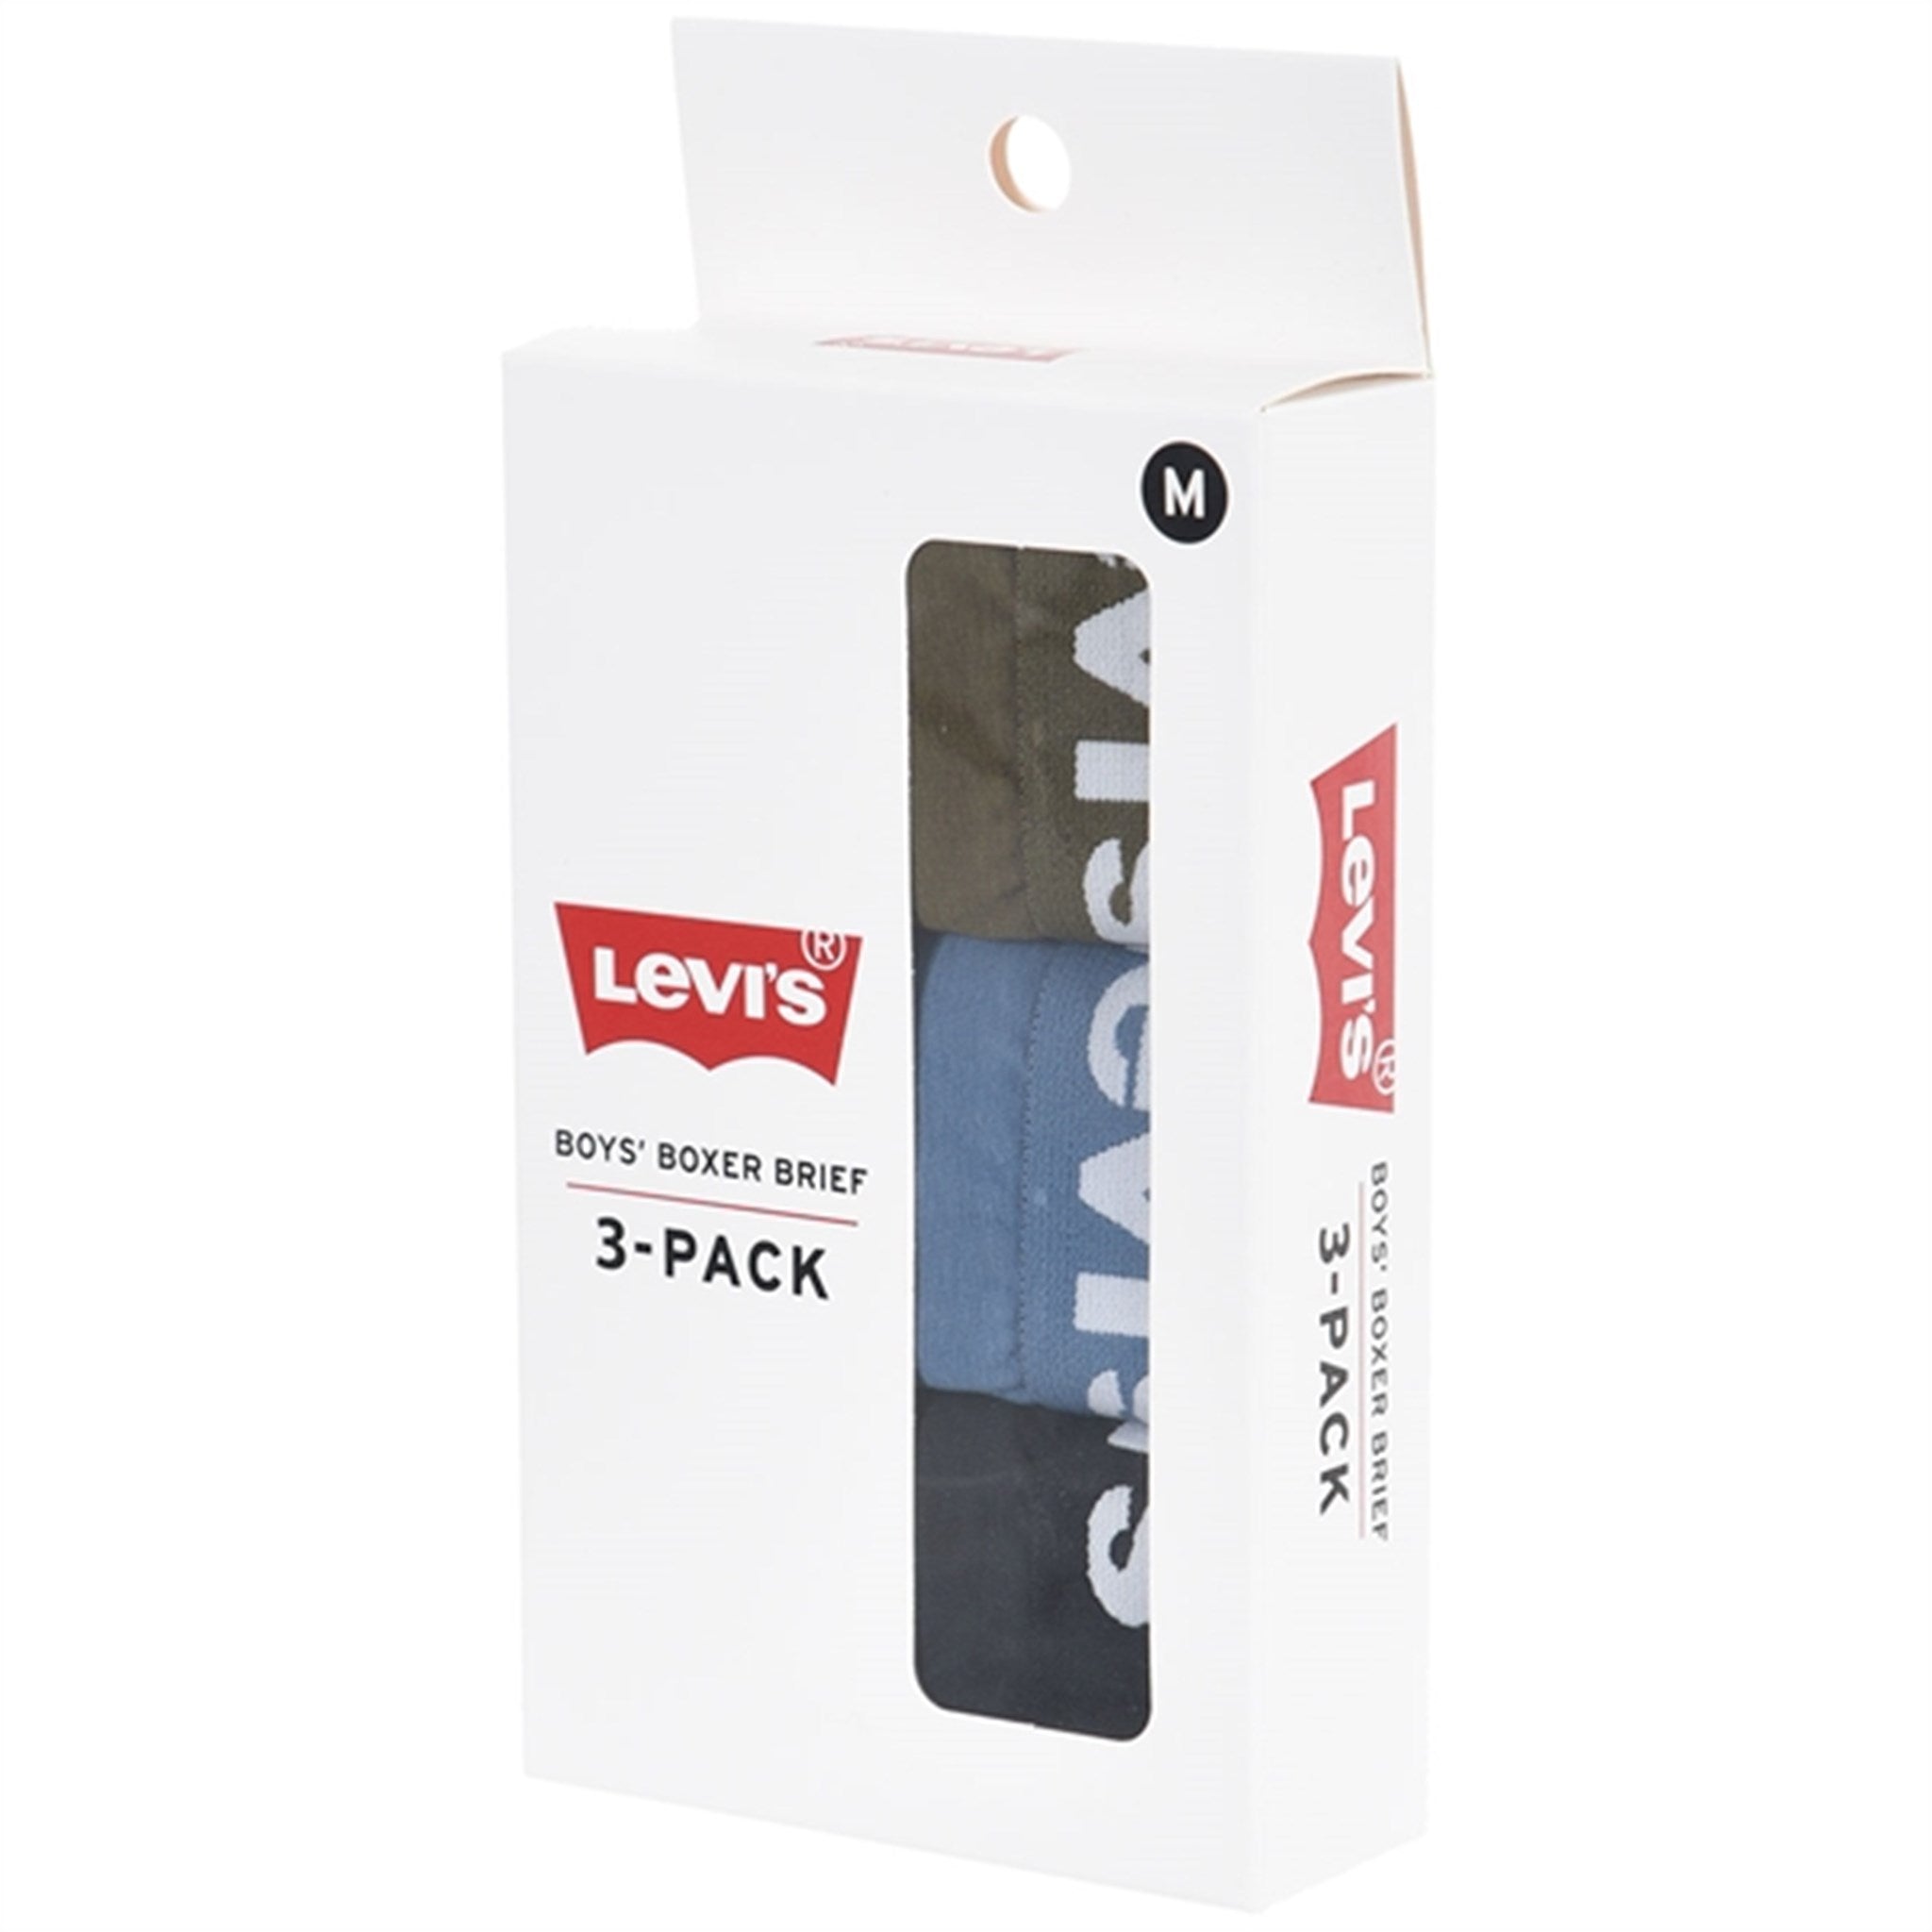 Levi's Boxer Briefs 3-Pack Black 3